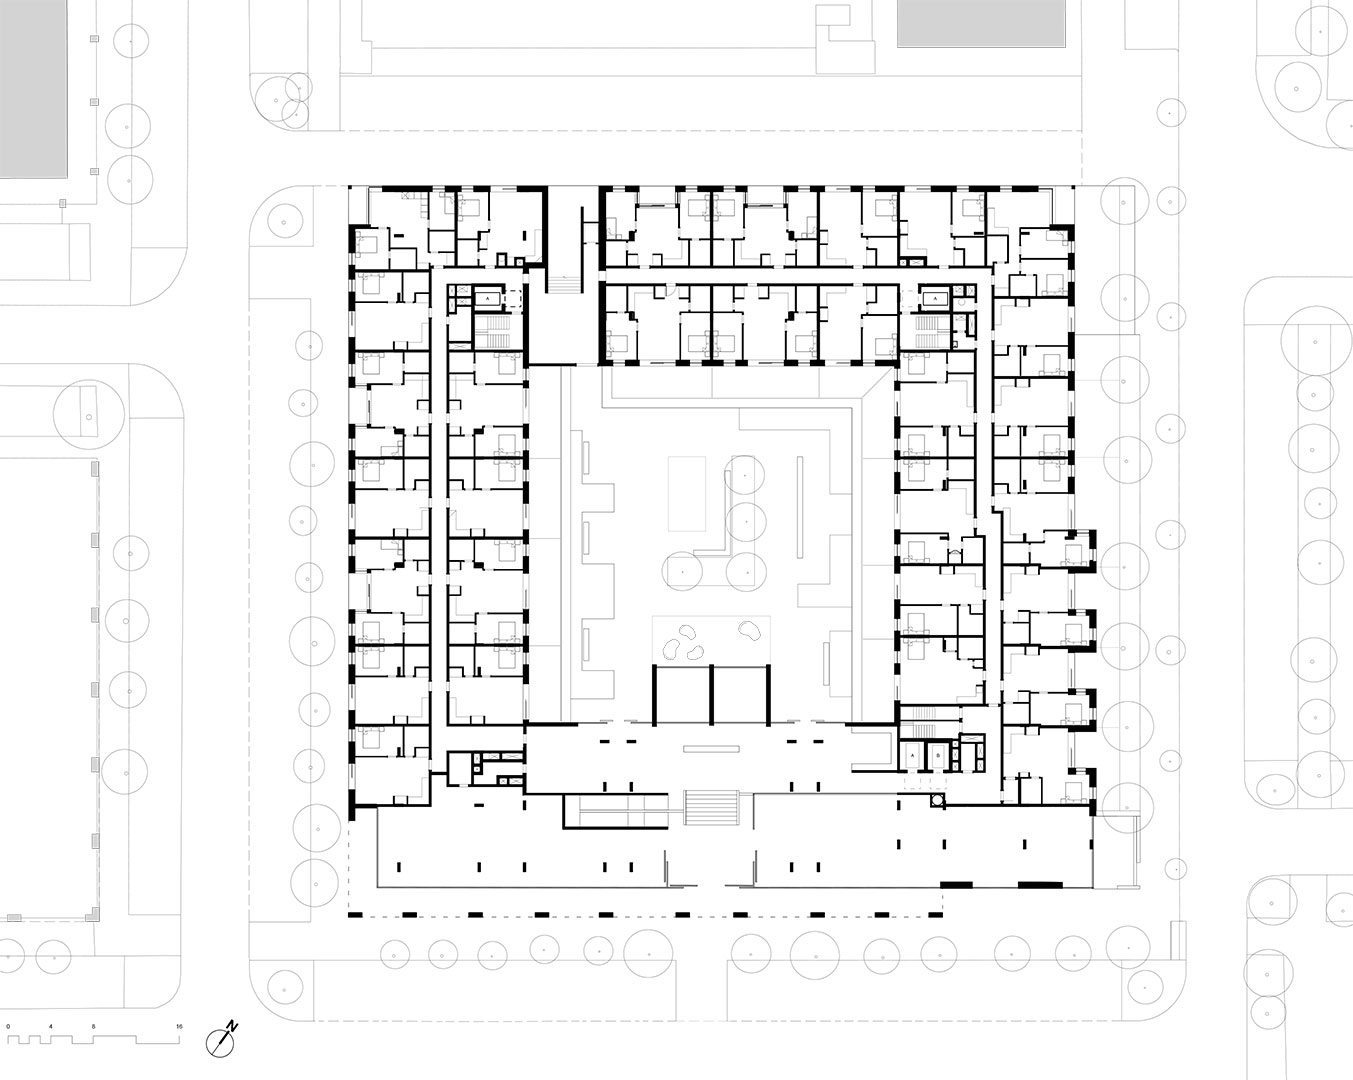 1809-Ground floor plan-02